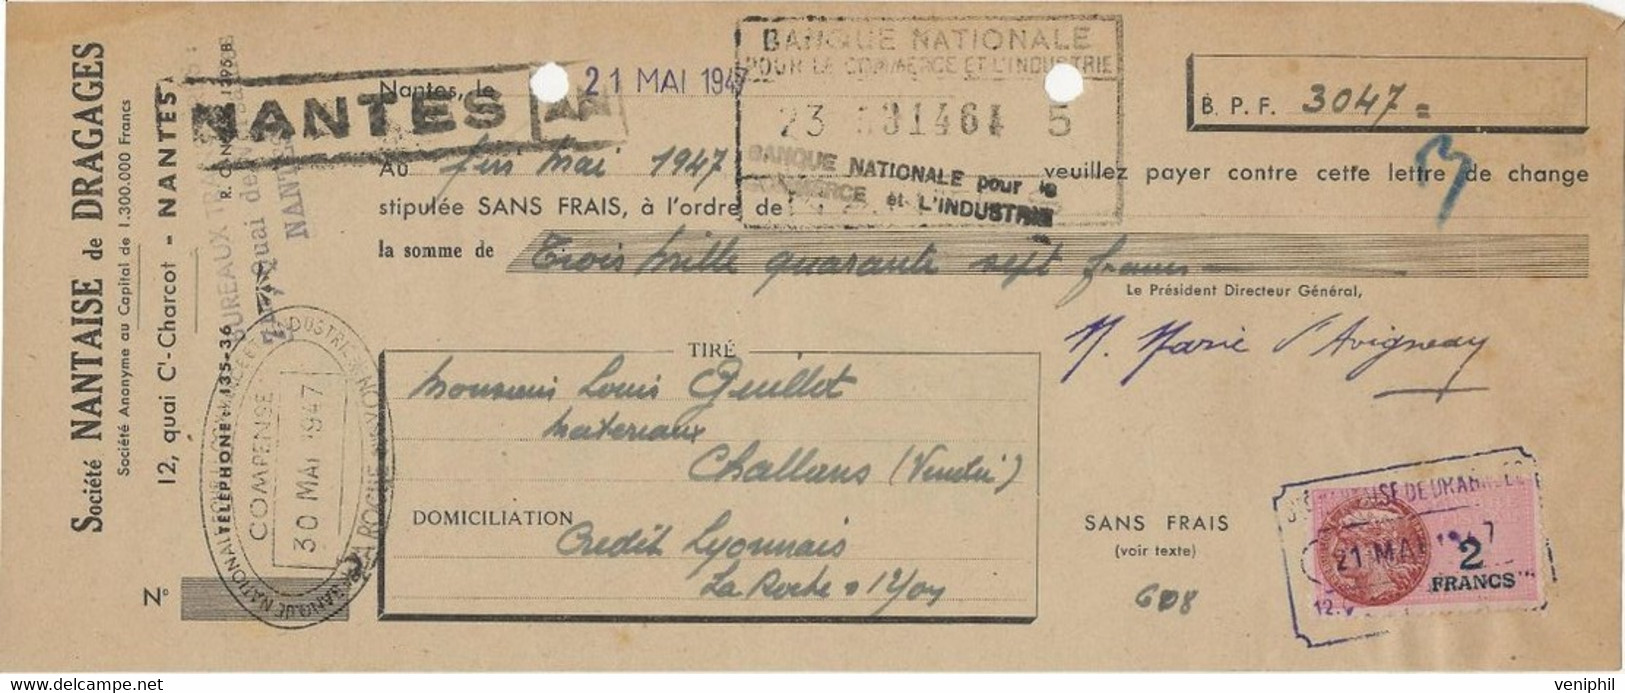 LETTRE DE CHANGE - SOCIETE NANTAISE DE DRAGAGES - NANTES - ANNEE 1947 - Bills Of Exchange